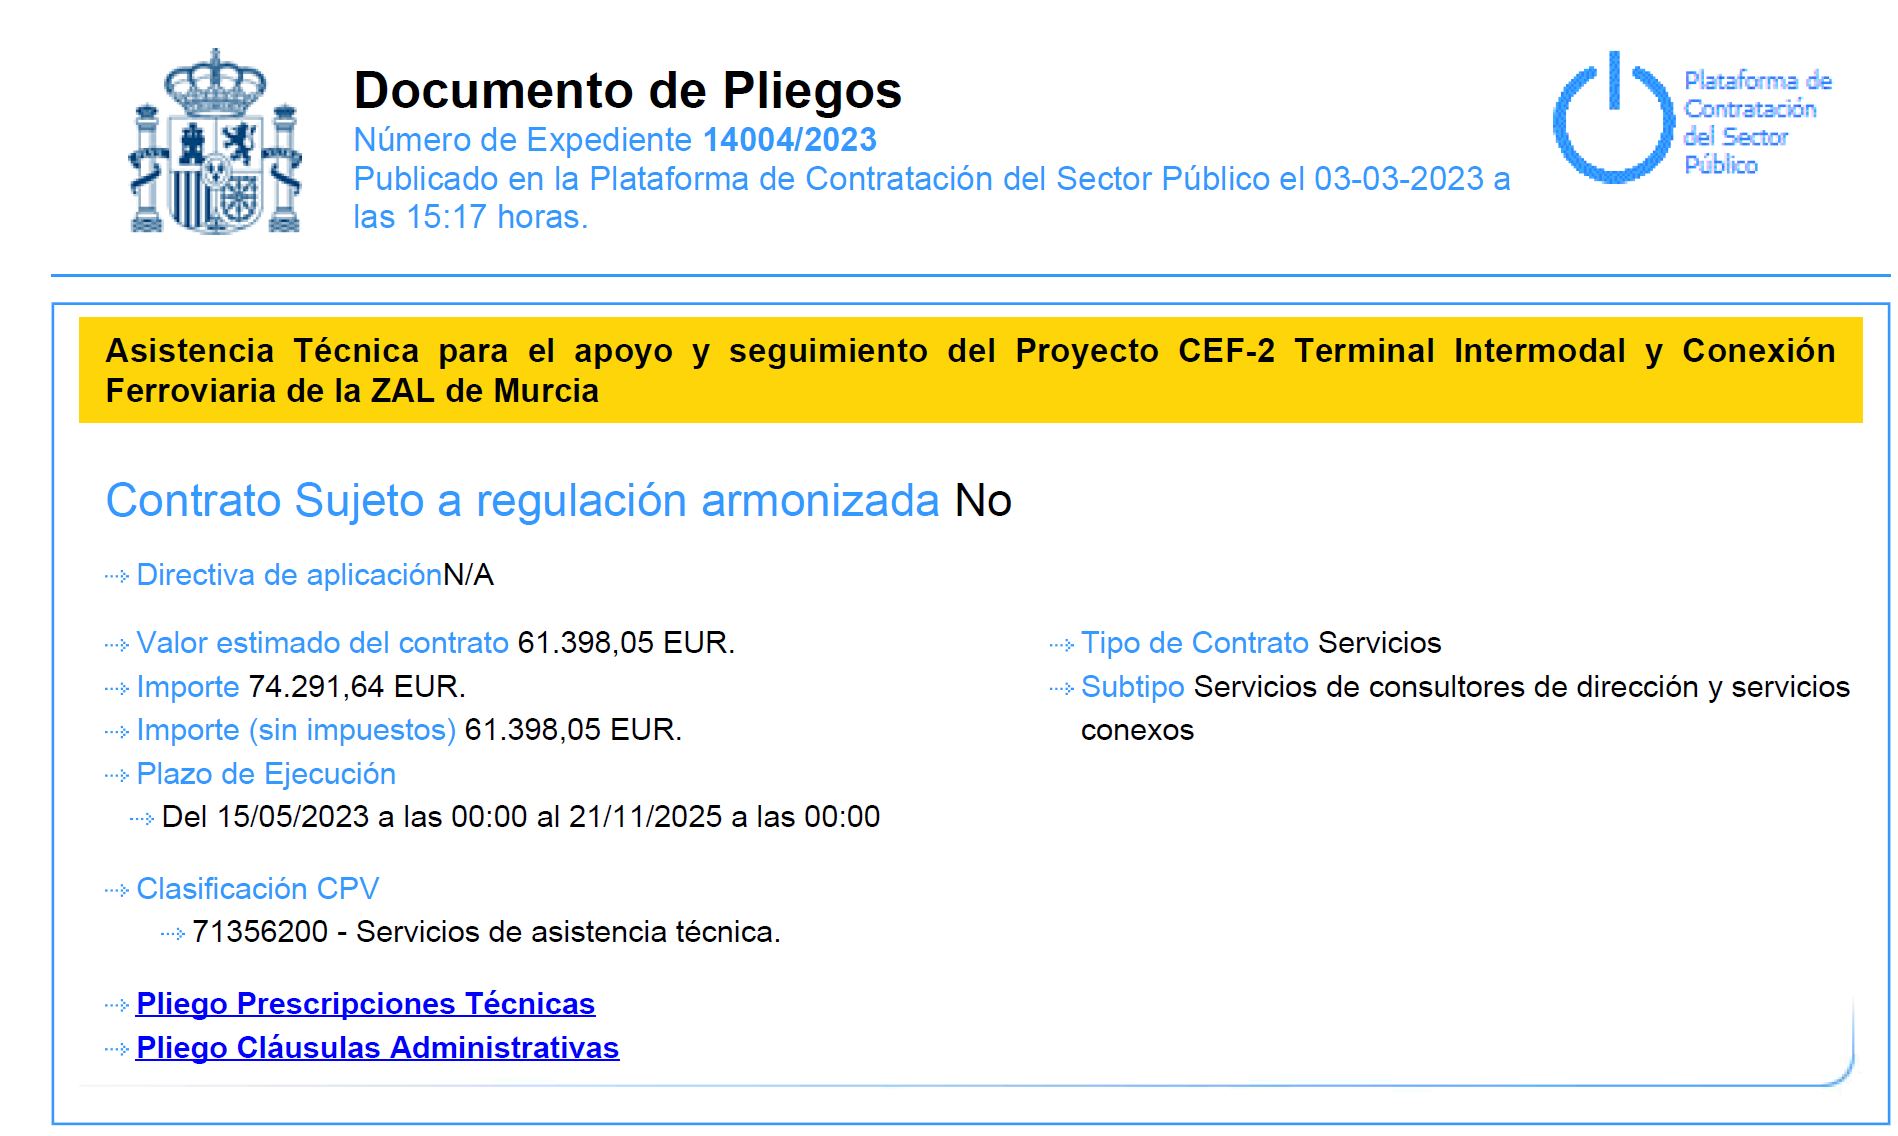 Documento de Pliegos. Asistencia Técnica para el apoyo y seguimiento del proyecto CFE-2 Terminal Intermodal y Conexión Ferroviaria de la ZAL de Murcia